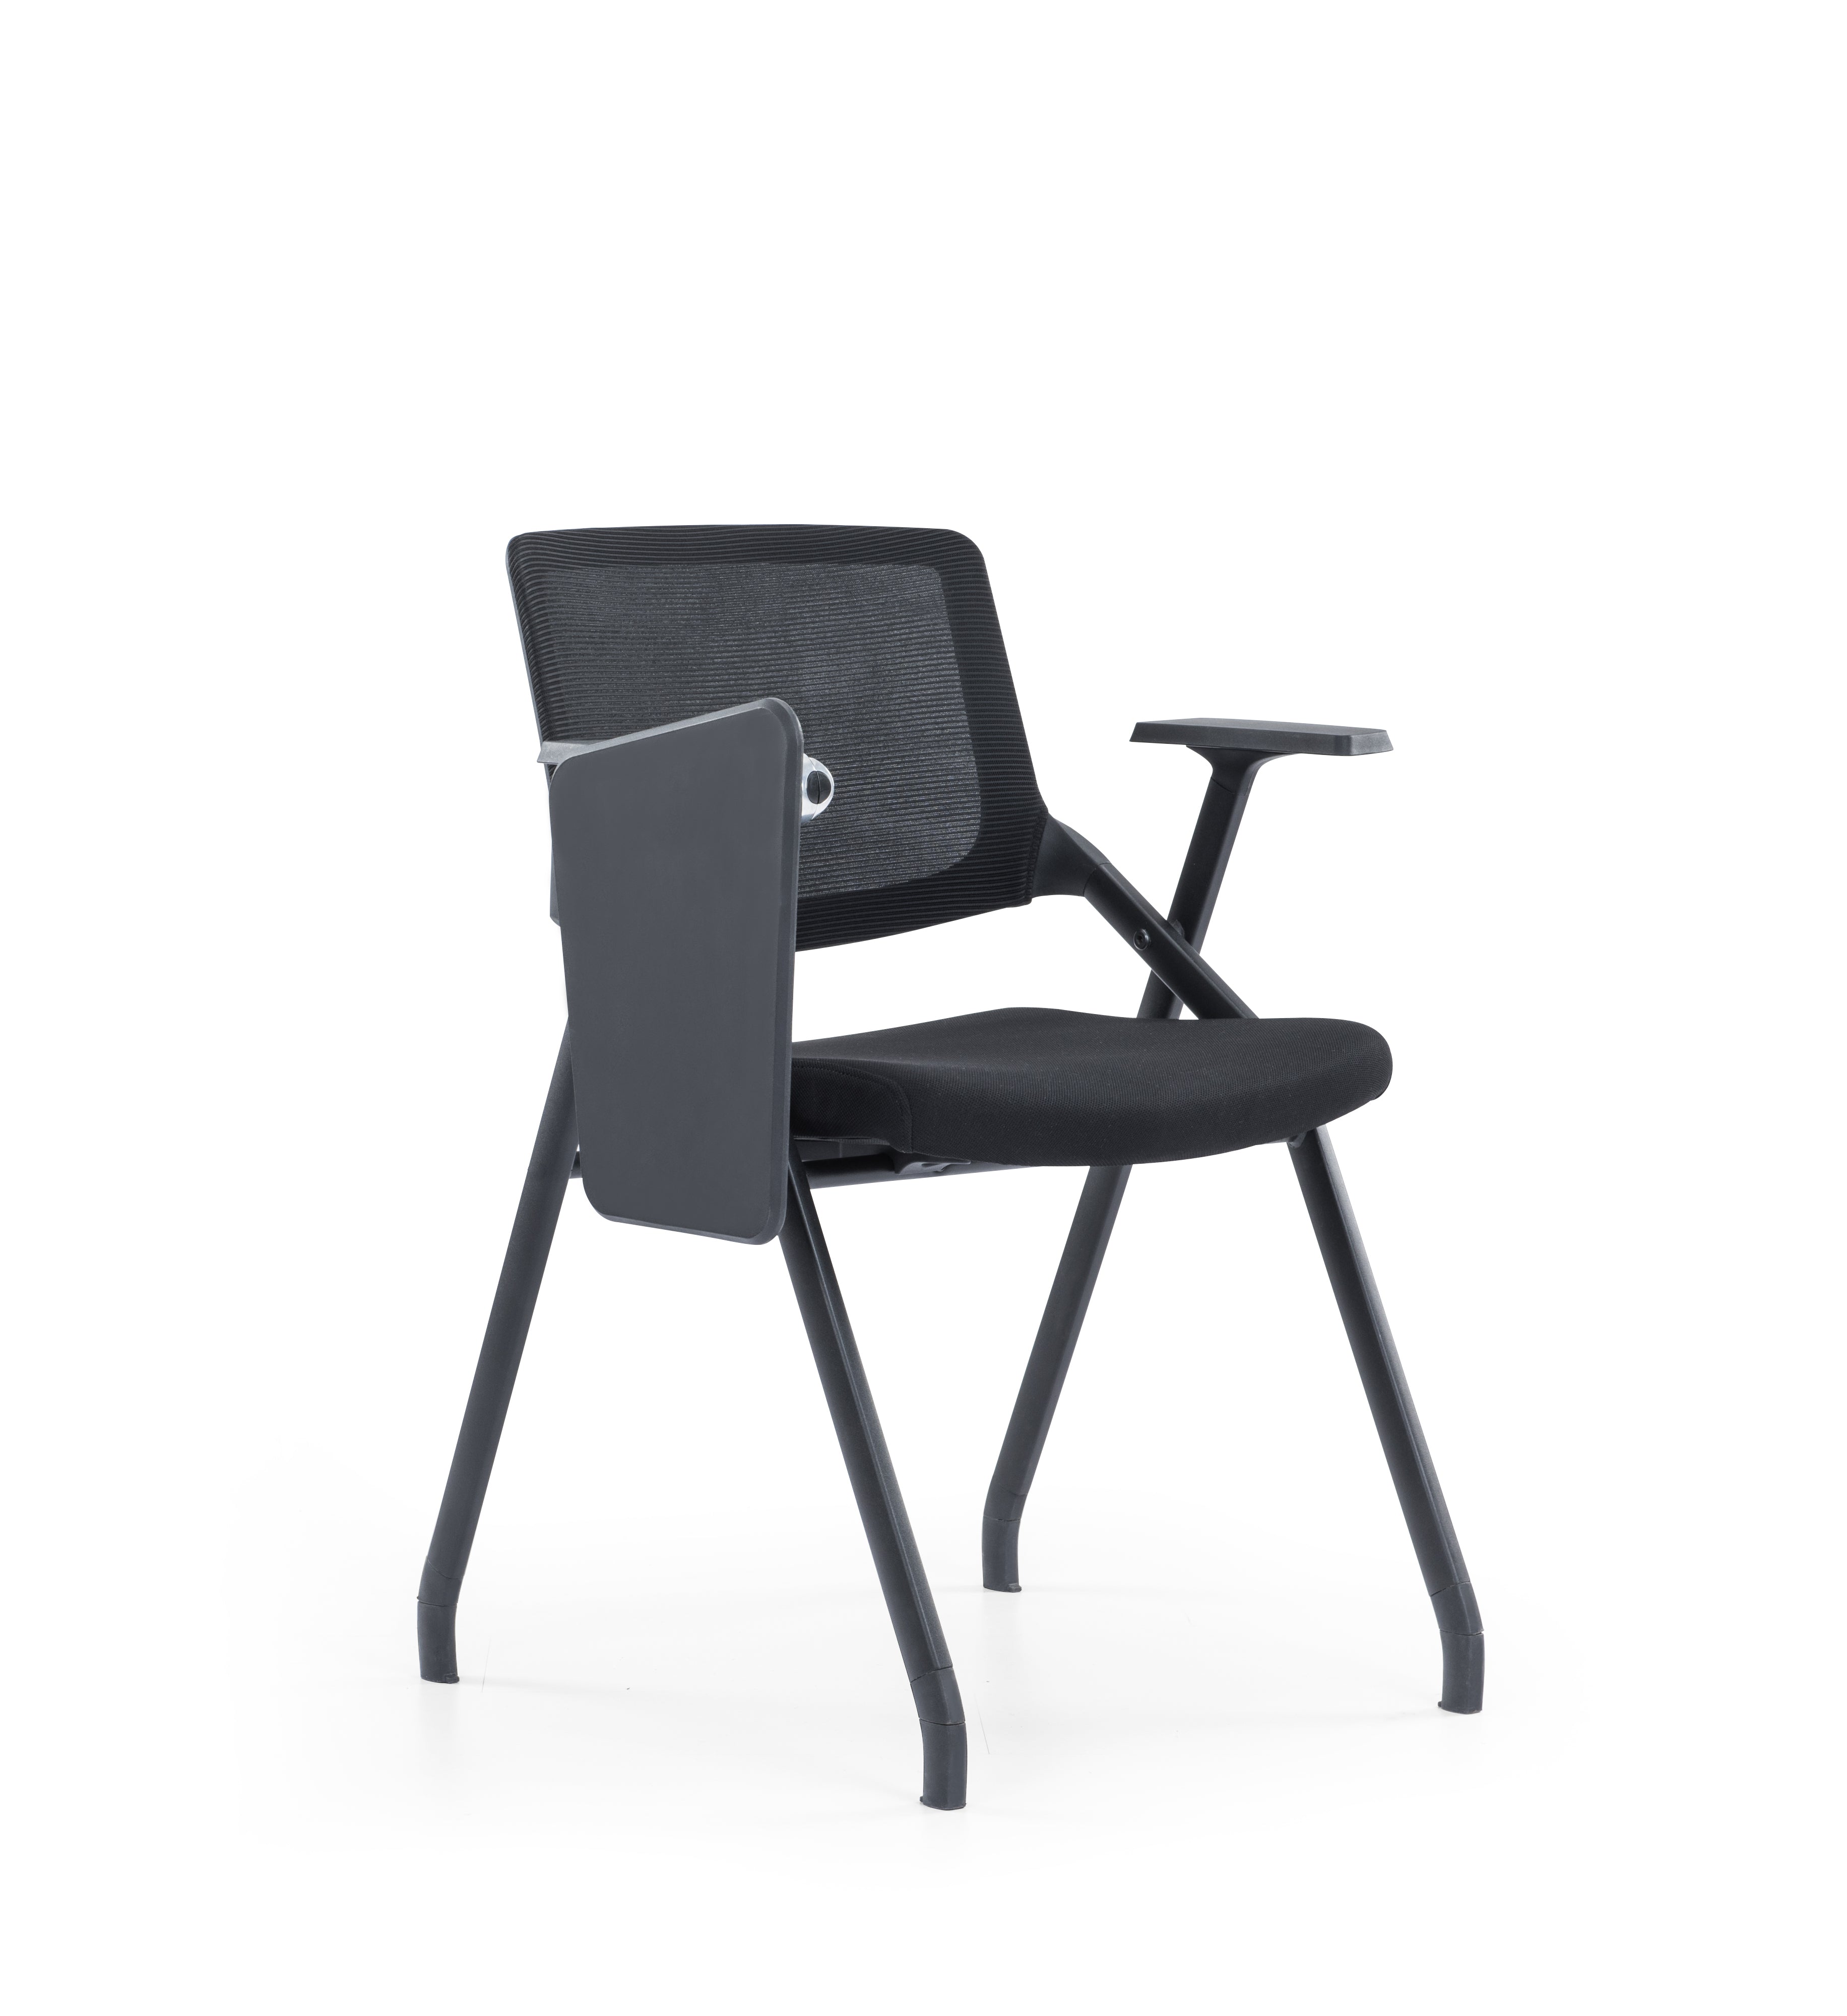 培訓椅 員工椅 辦公椅 Simple Comfortable Training Chair